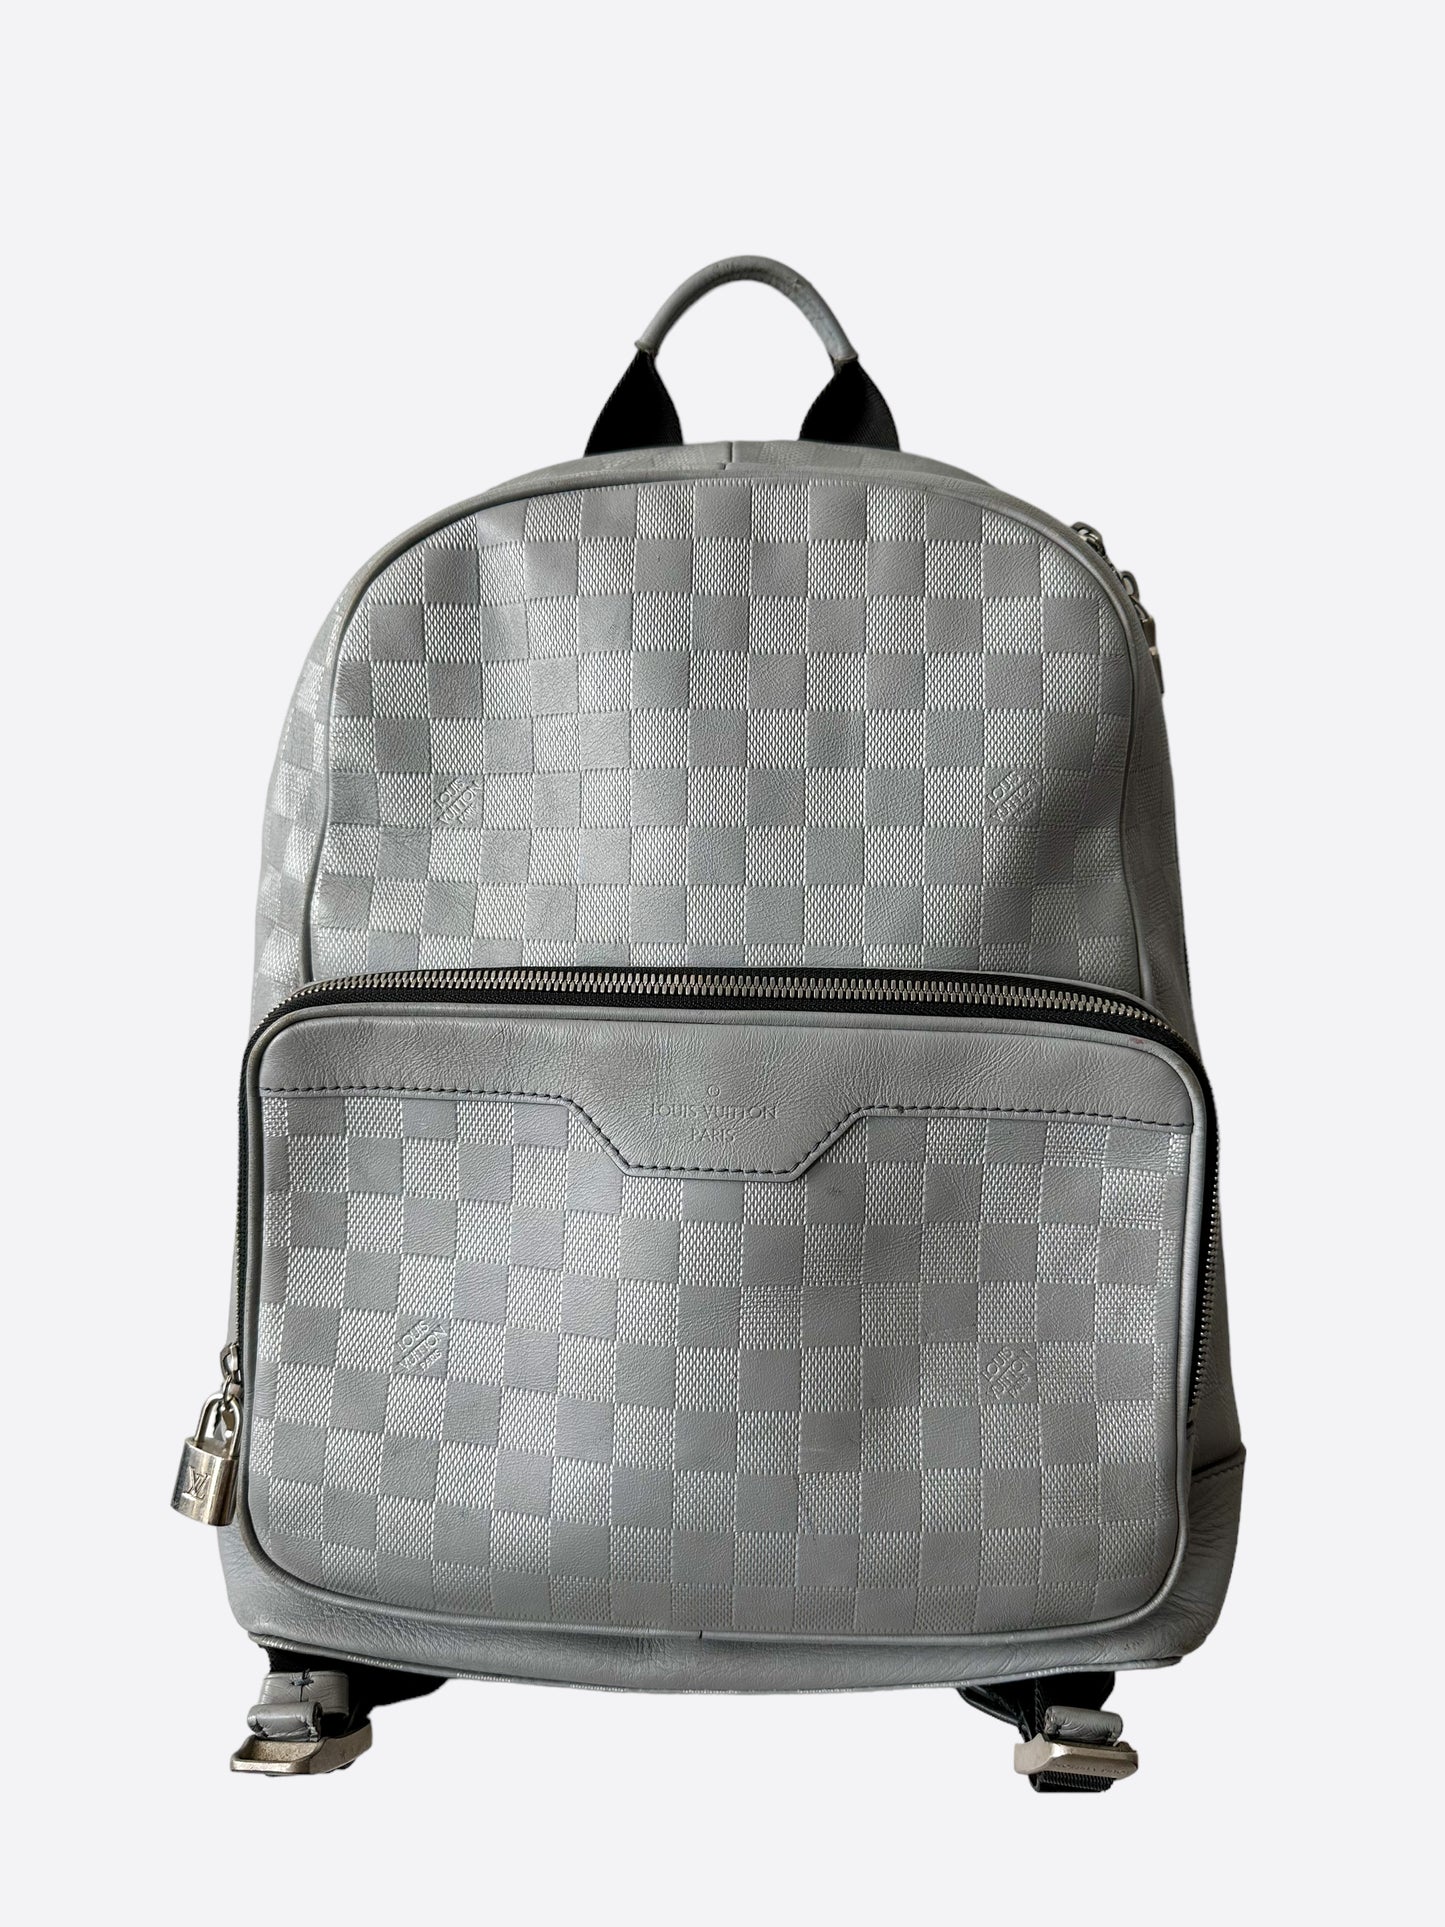 damier infini backpack